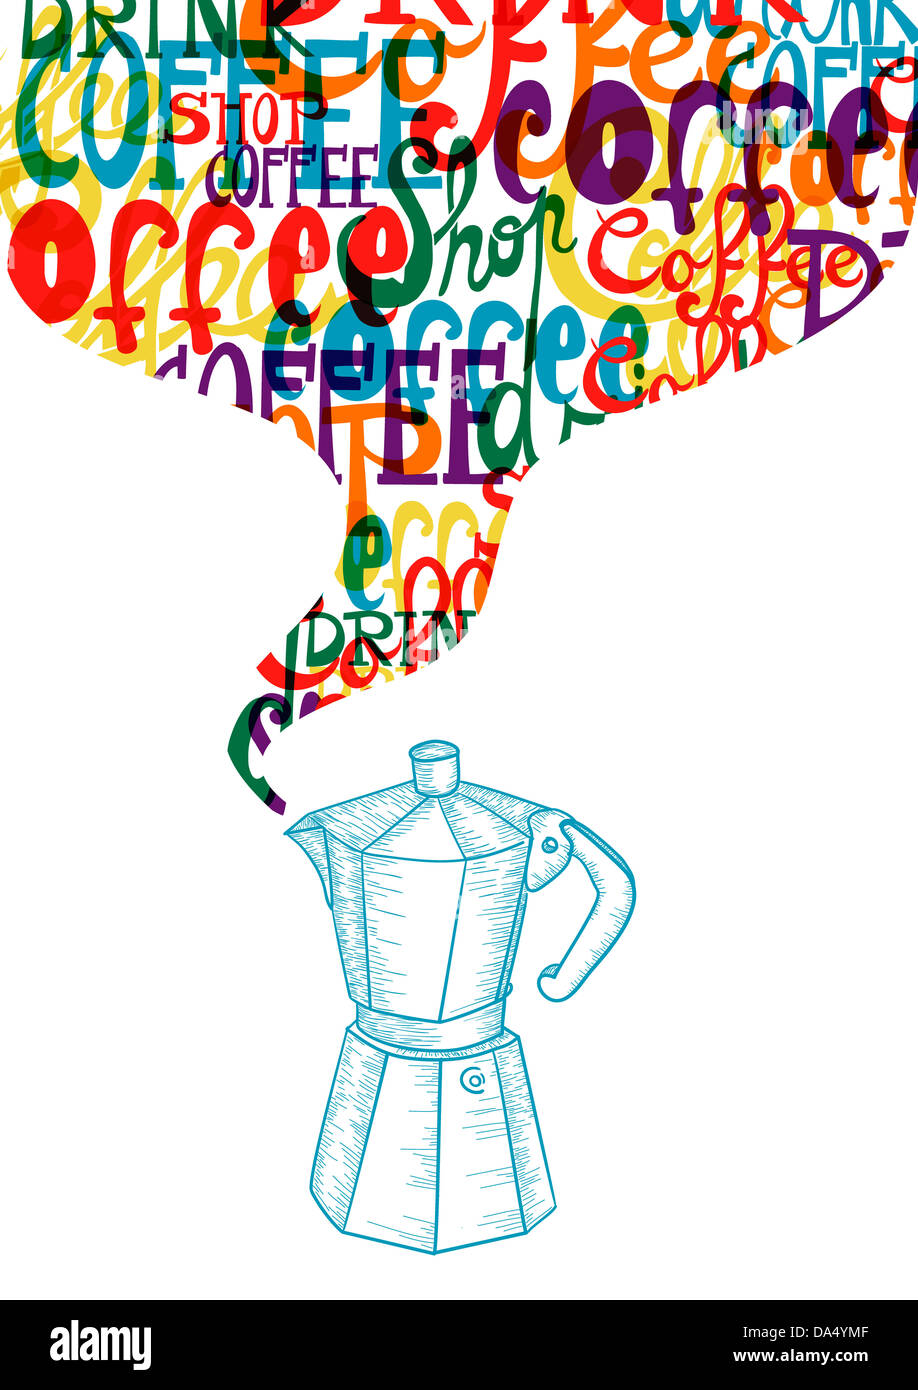 Trendige bunte Kaffee-Design-Konzept. EPS10 Dateiversion. Diese Darstellung enthält Folien und ist für einfache Handhabung und individuelle Färbung geschichtet. Stockfoto